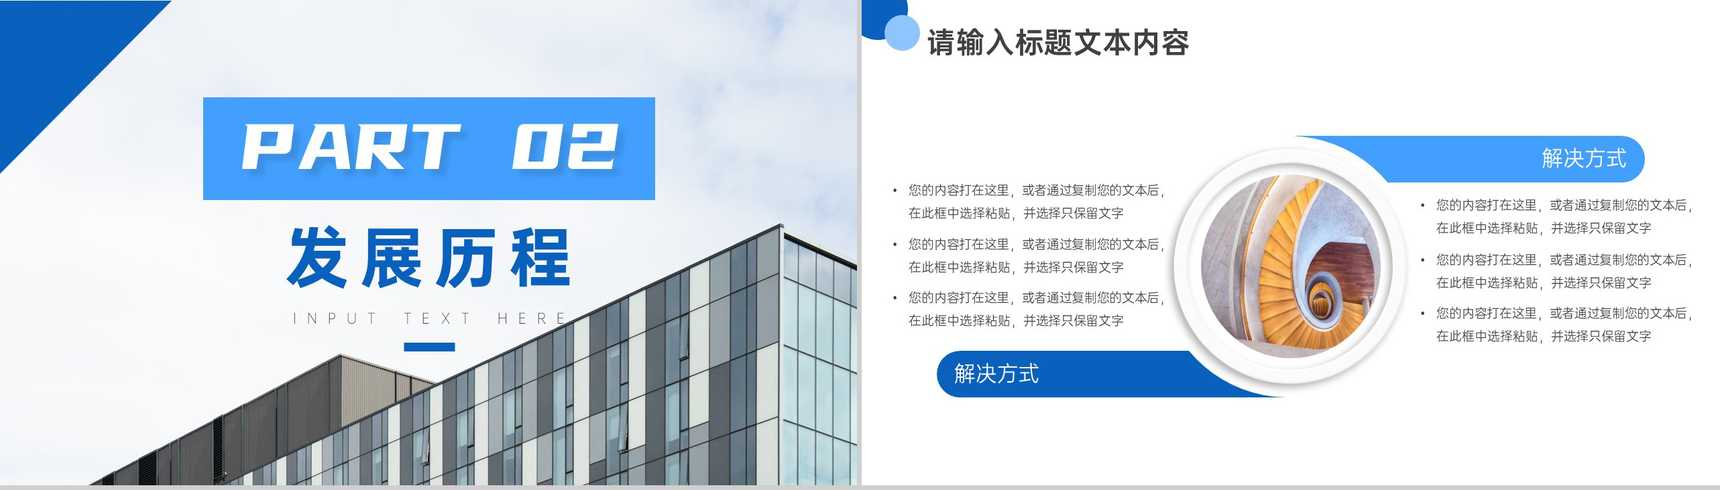 蓝白简约商务背景建筑公司企业介绍PPT模板-4